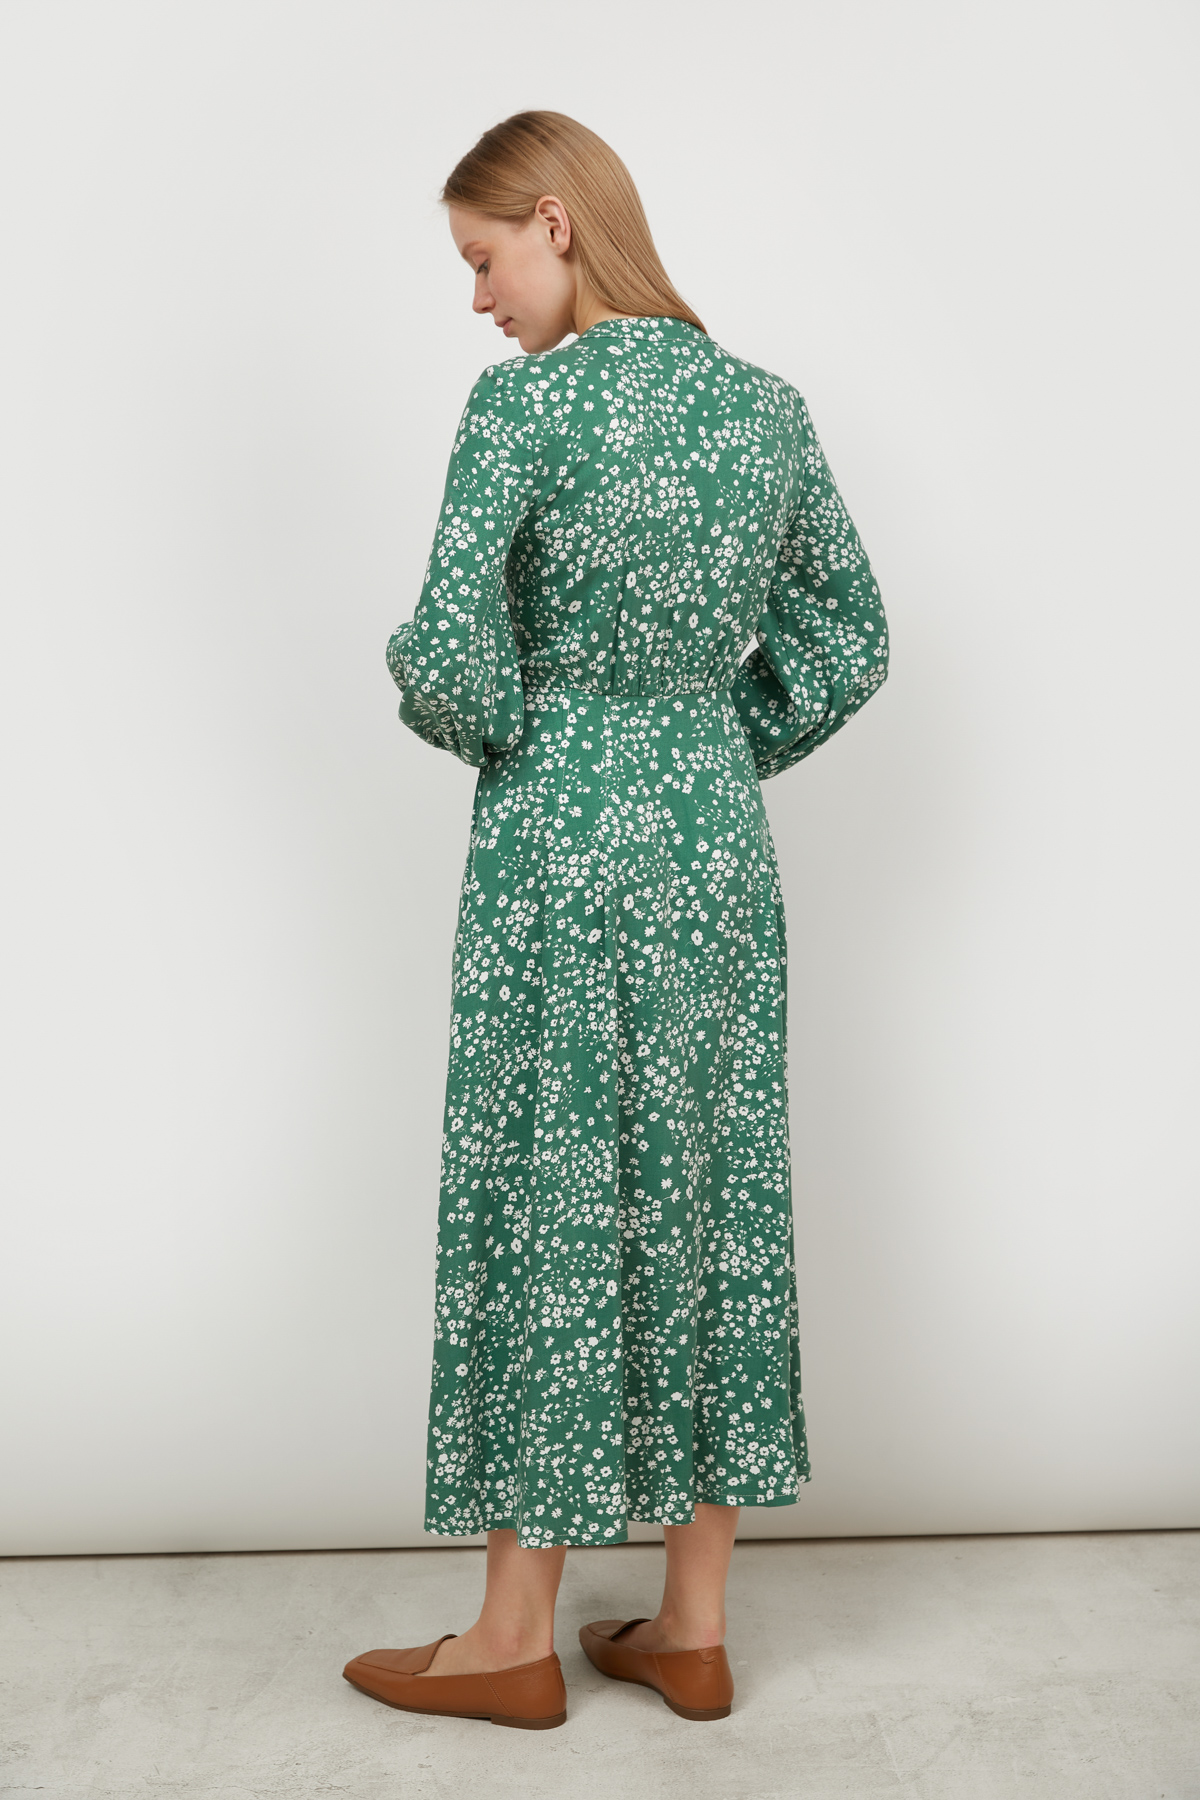 Сукня міді з віскози зелена в принт квіти, фото 4